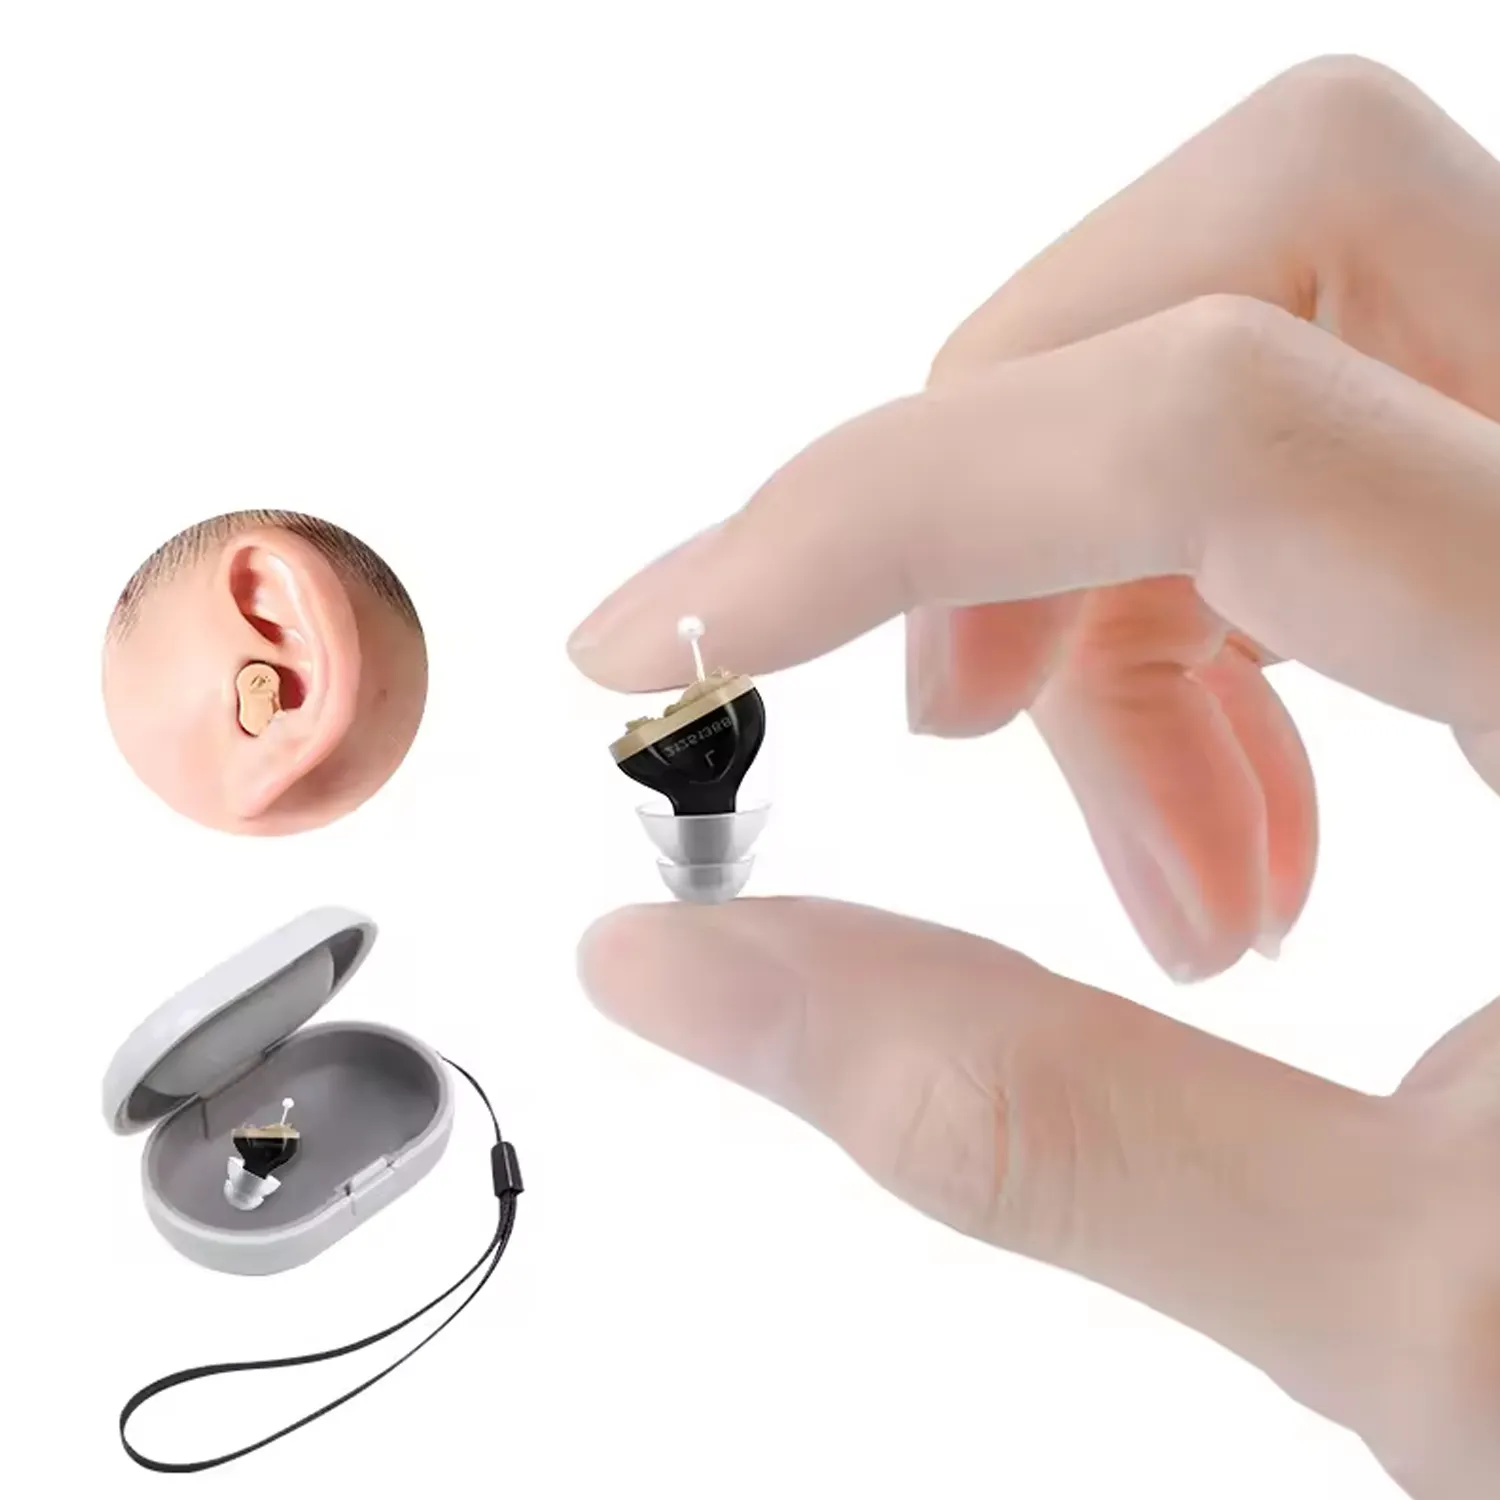 بطارية مساعدة على تقوية السمع غير مرئية للقراءة في الأذن لمضخم صوت صغير مع قائمة أسعار